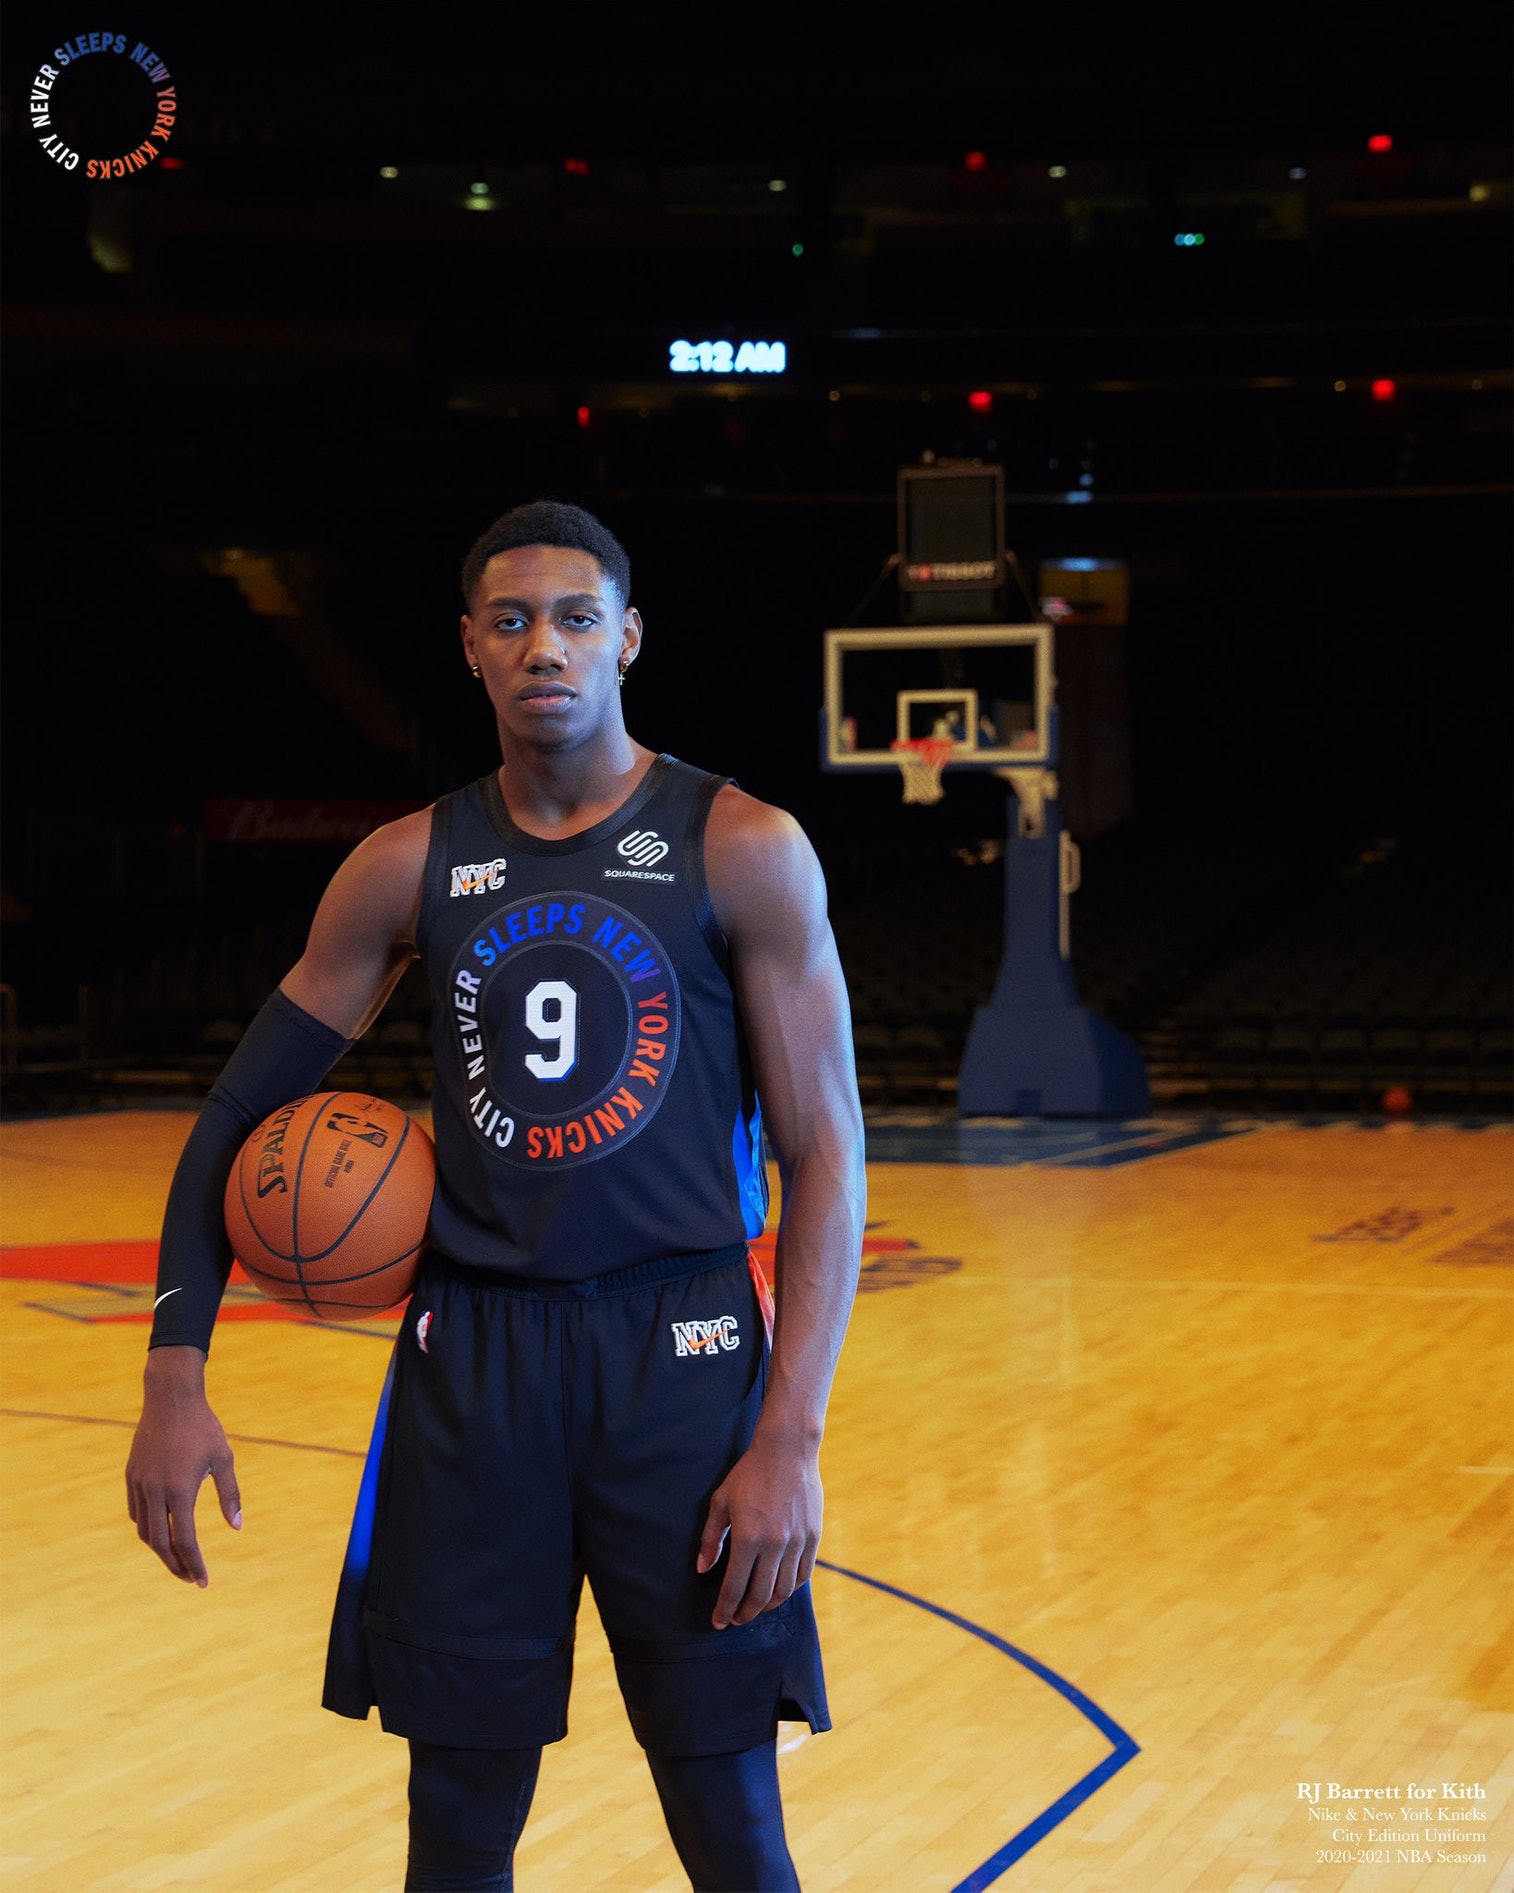 Kith Nike New York Knicks madison jacket www.krzysztofbialy.com